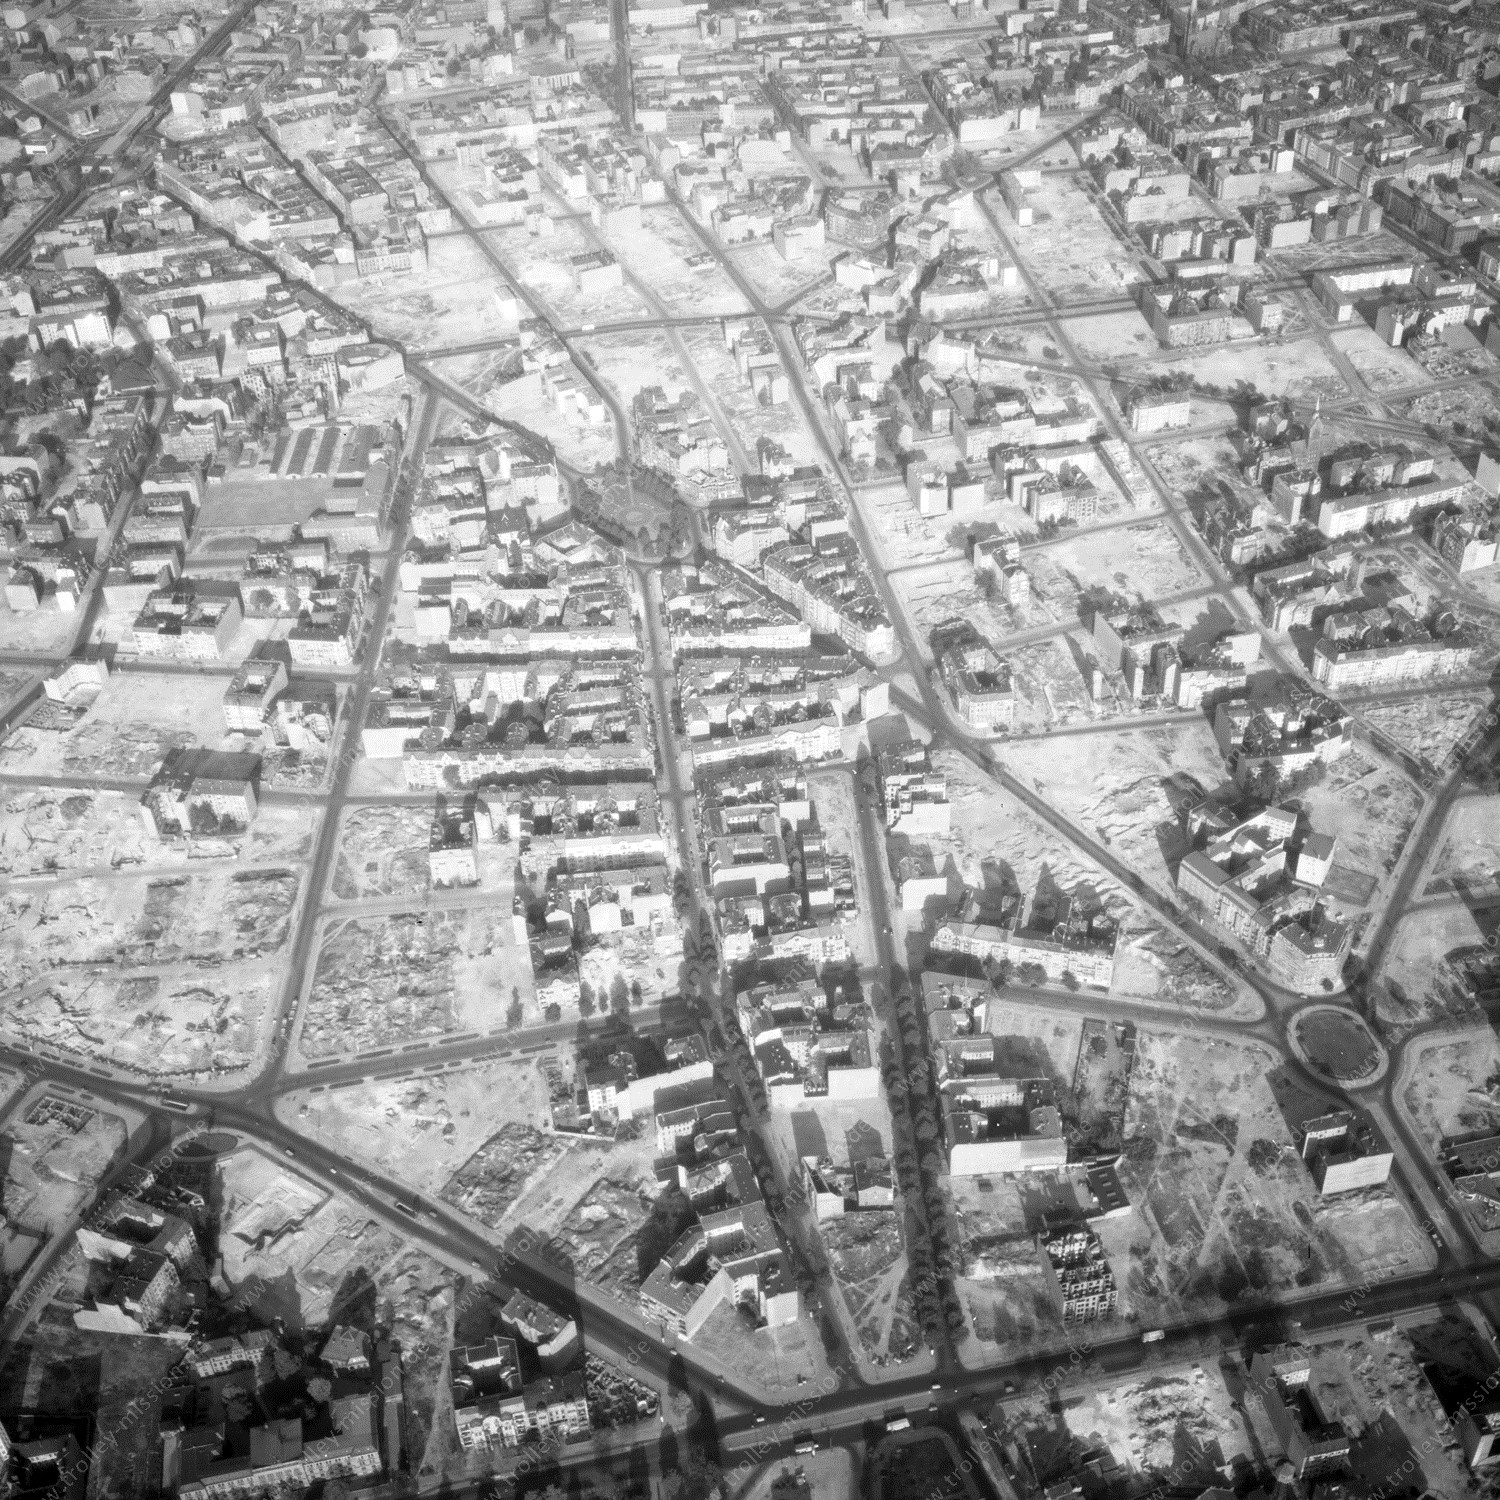 Alte Fotos und Luftbilder von Berlin - Luftbildaufnahme Nr. 08 - Historische Luftaufnahmen von West-Berlin aus dem Jahr 1954 - Flugstrecke Echo